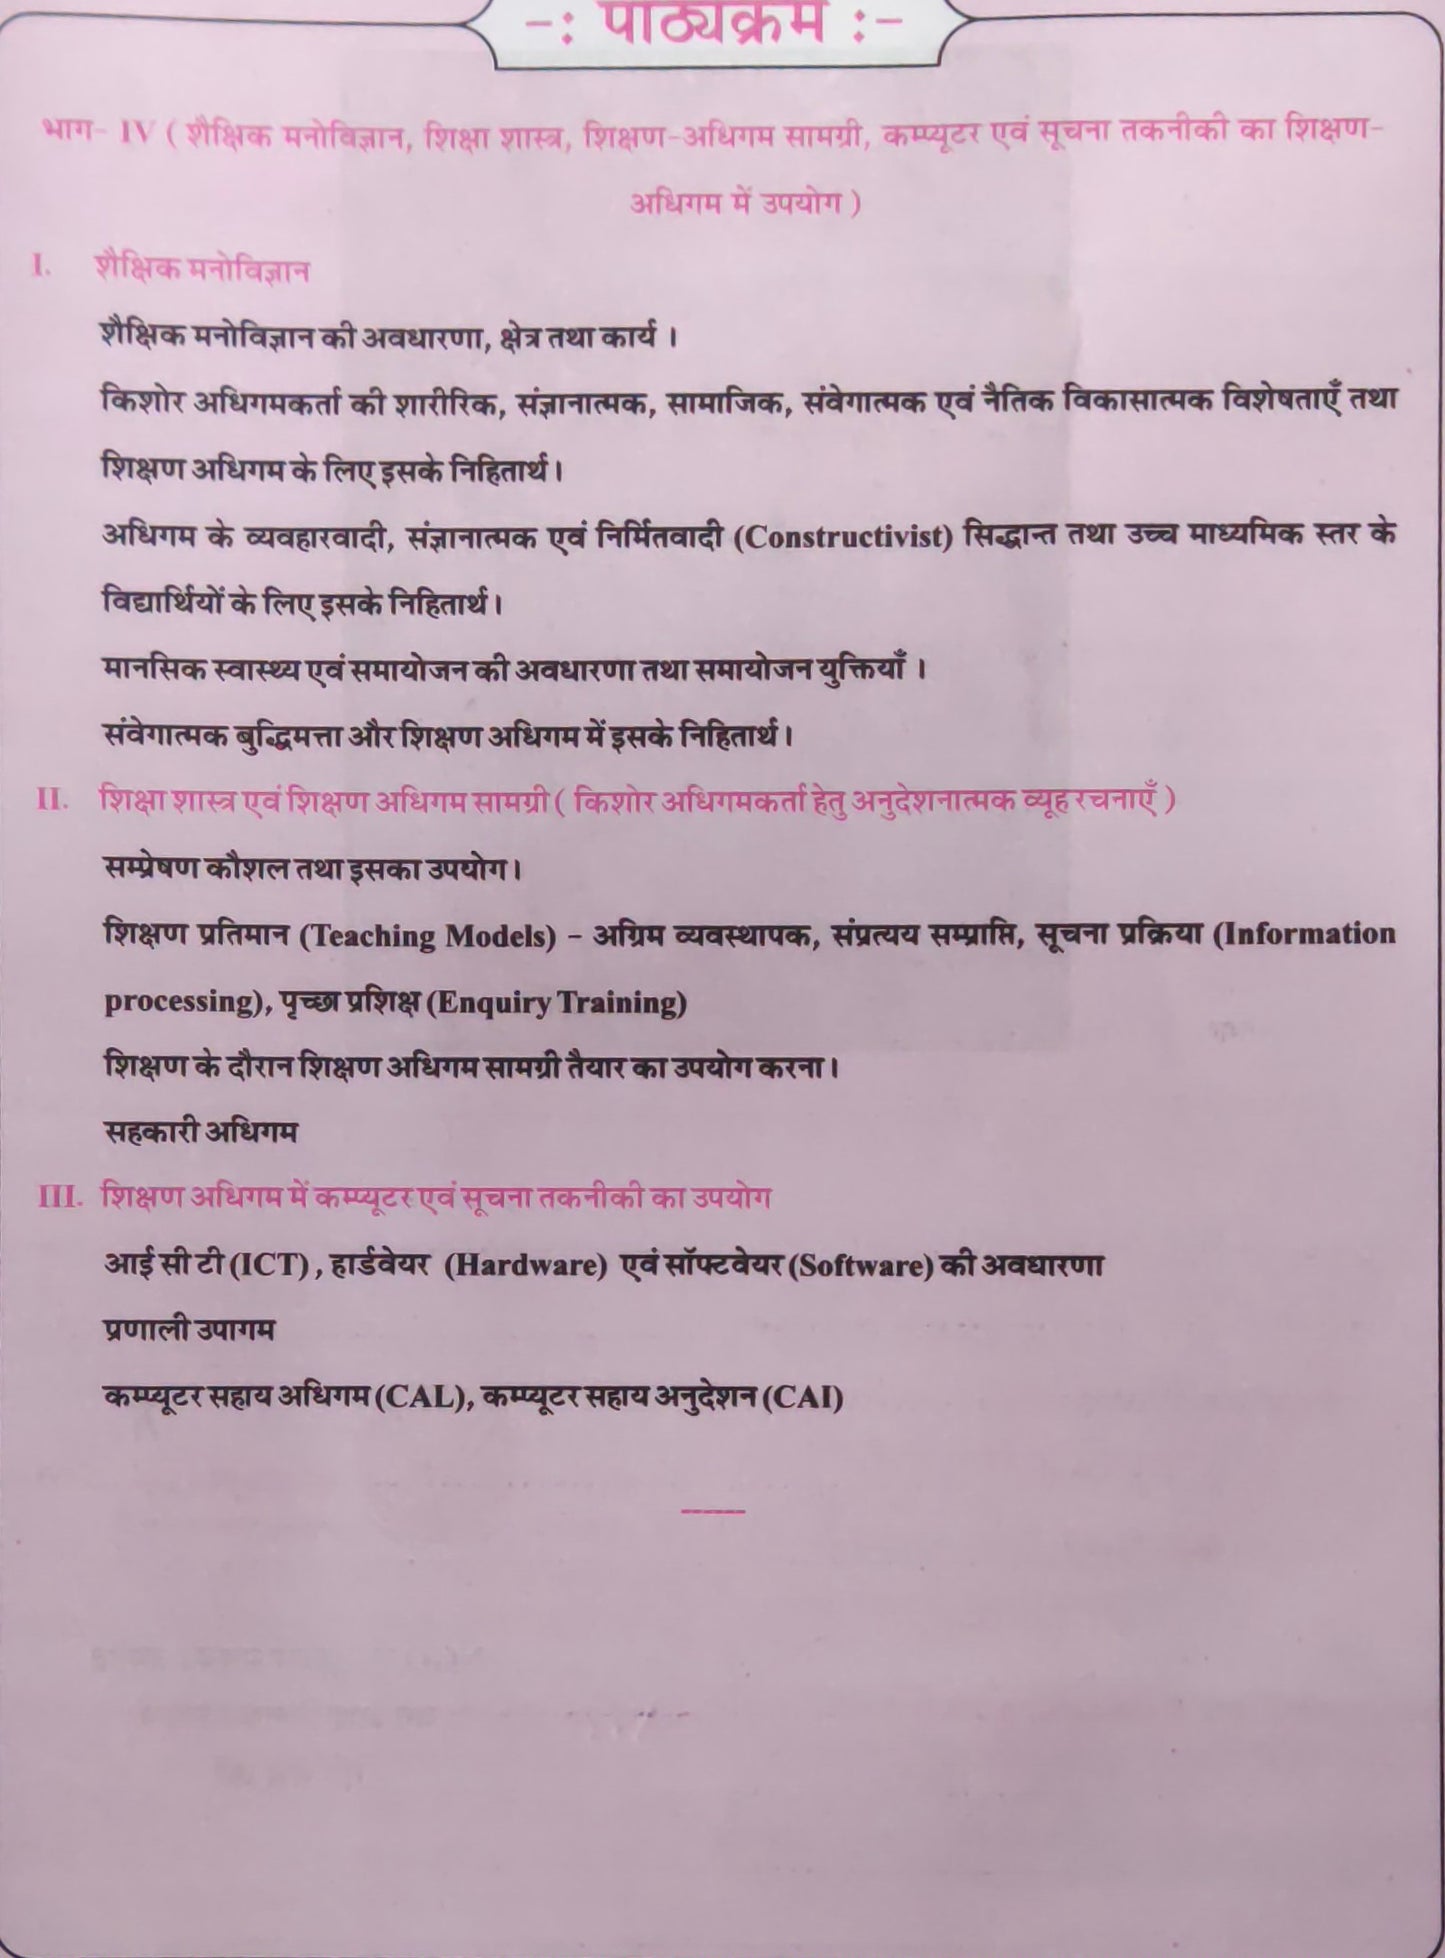 Avni publication shaikshik manovigyan v Shiksha Shastra